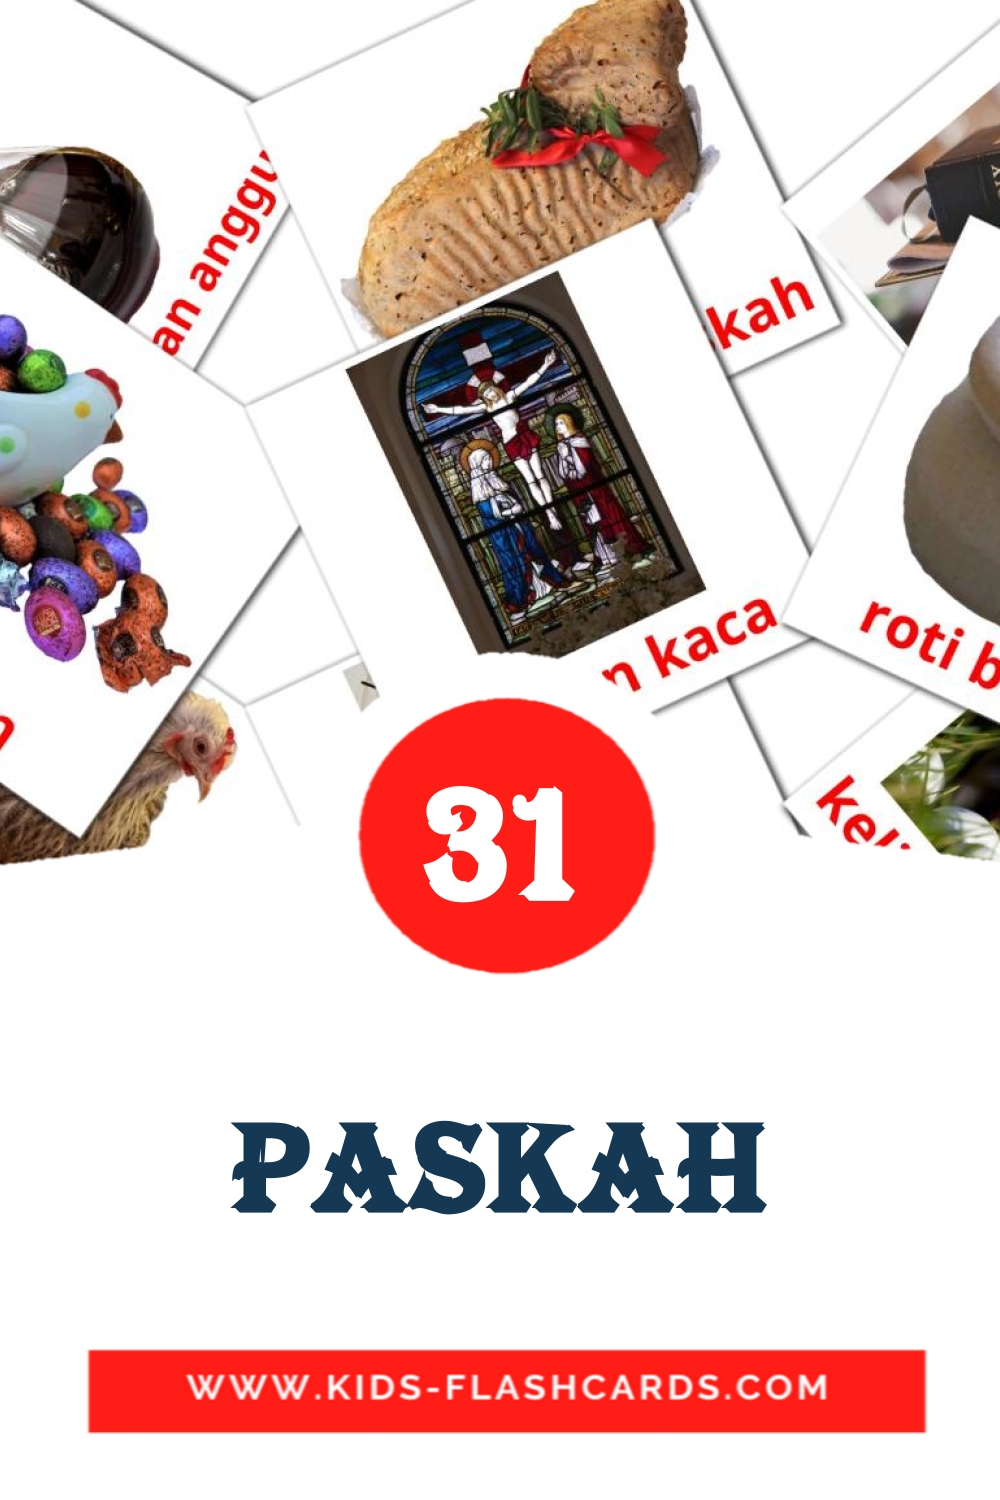 Paskah на индонезийском для Детского Сада (31 карточка)